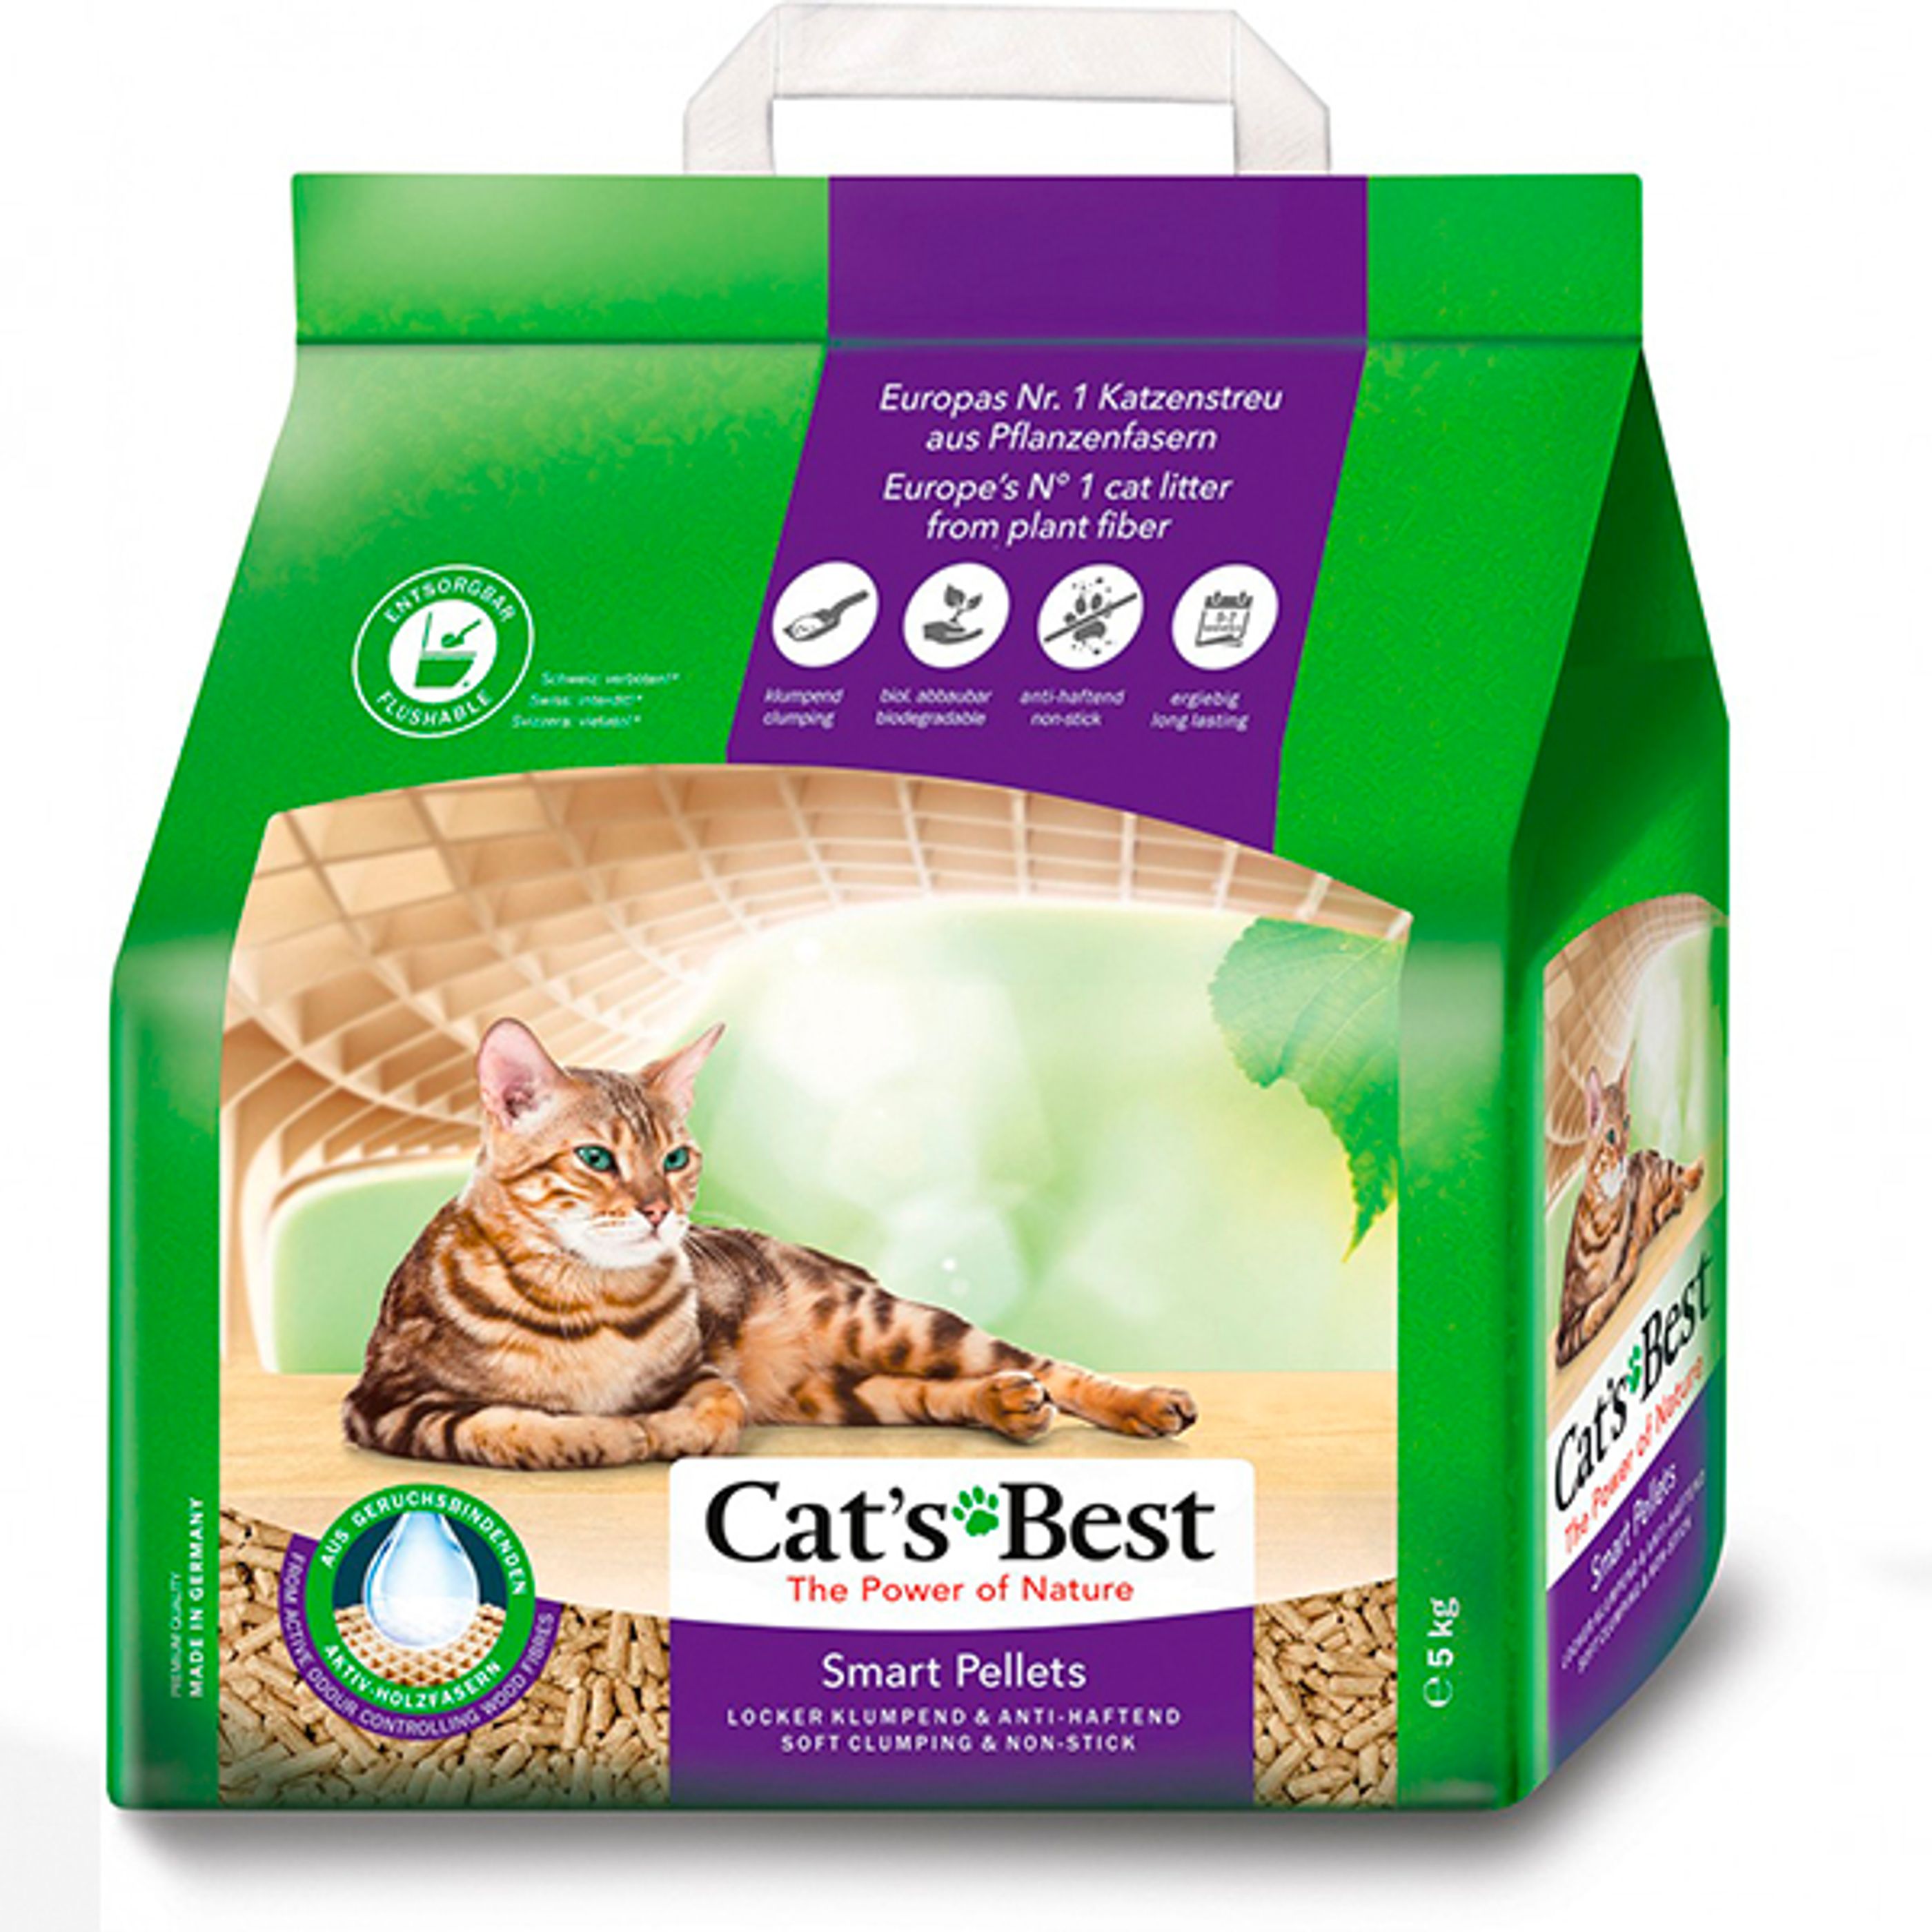 Areia/Litter Cat's Best Smart Pellets 5 Kg